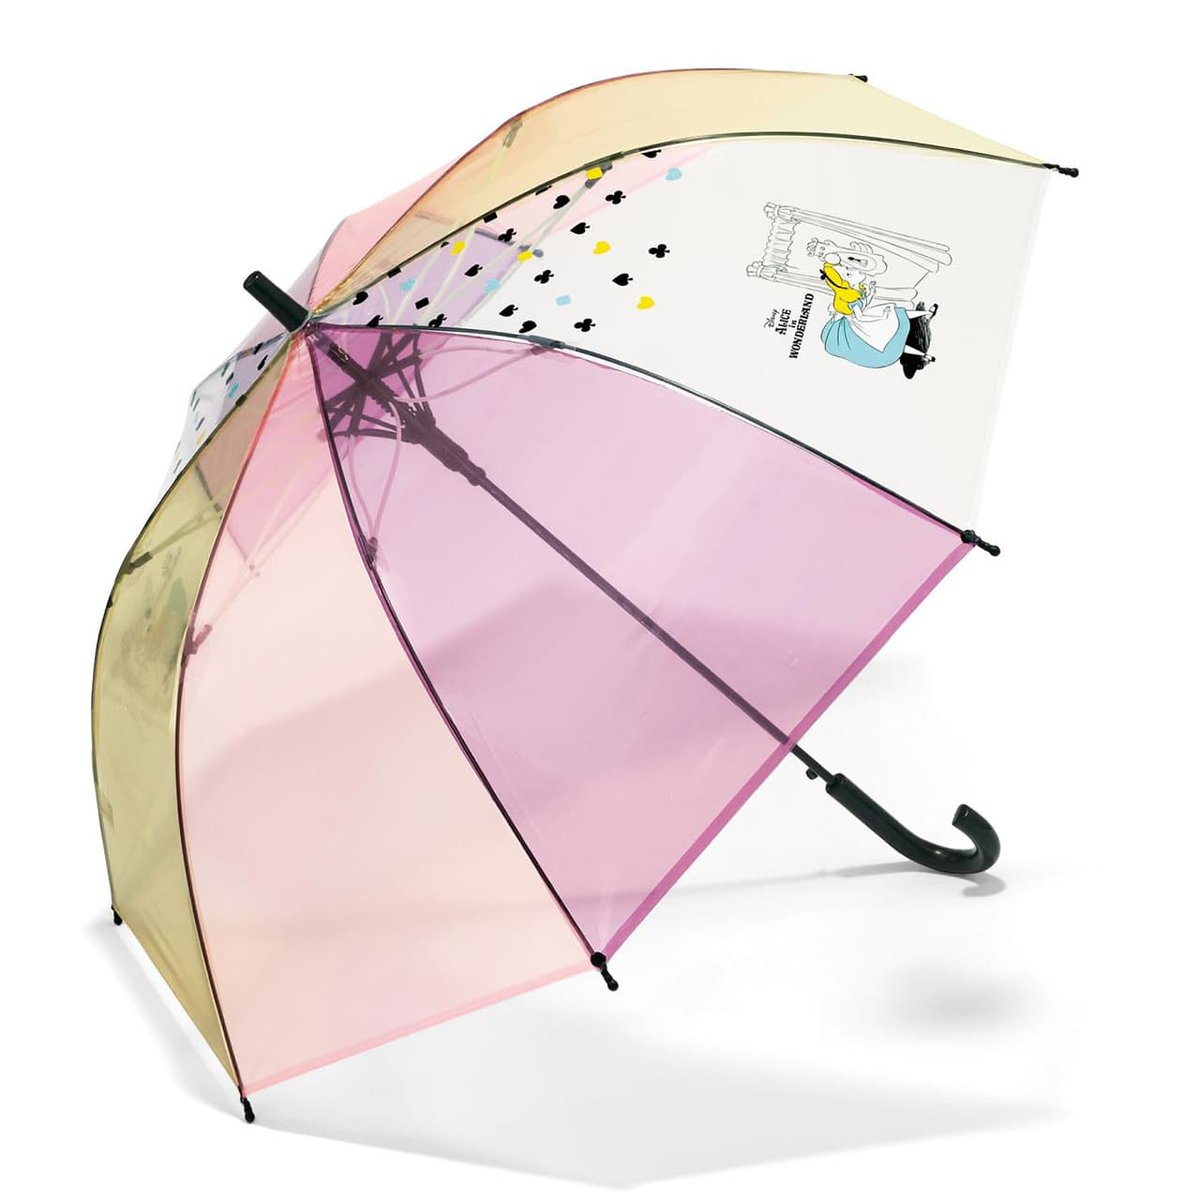 ディズニー公式 Pa Twitter 6月に入ると気になる 梅雨入り ですが 雨の日が嬉しくなるようなオシャレなレイングッズをご紹介 雨風に強い桜骨のビニール傘や 晴れの日にも活躍の晴雨兼用傘 さらに 傘立てもお気に入りのデザインで T Co Beoql7airl